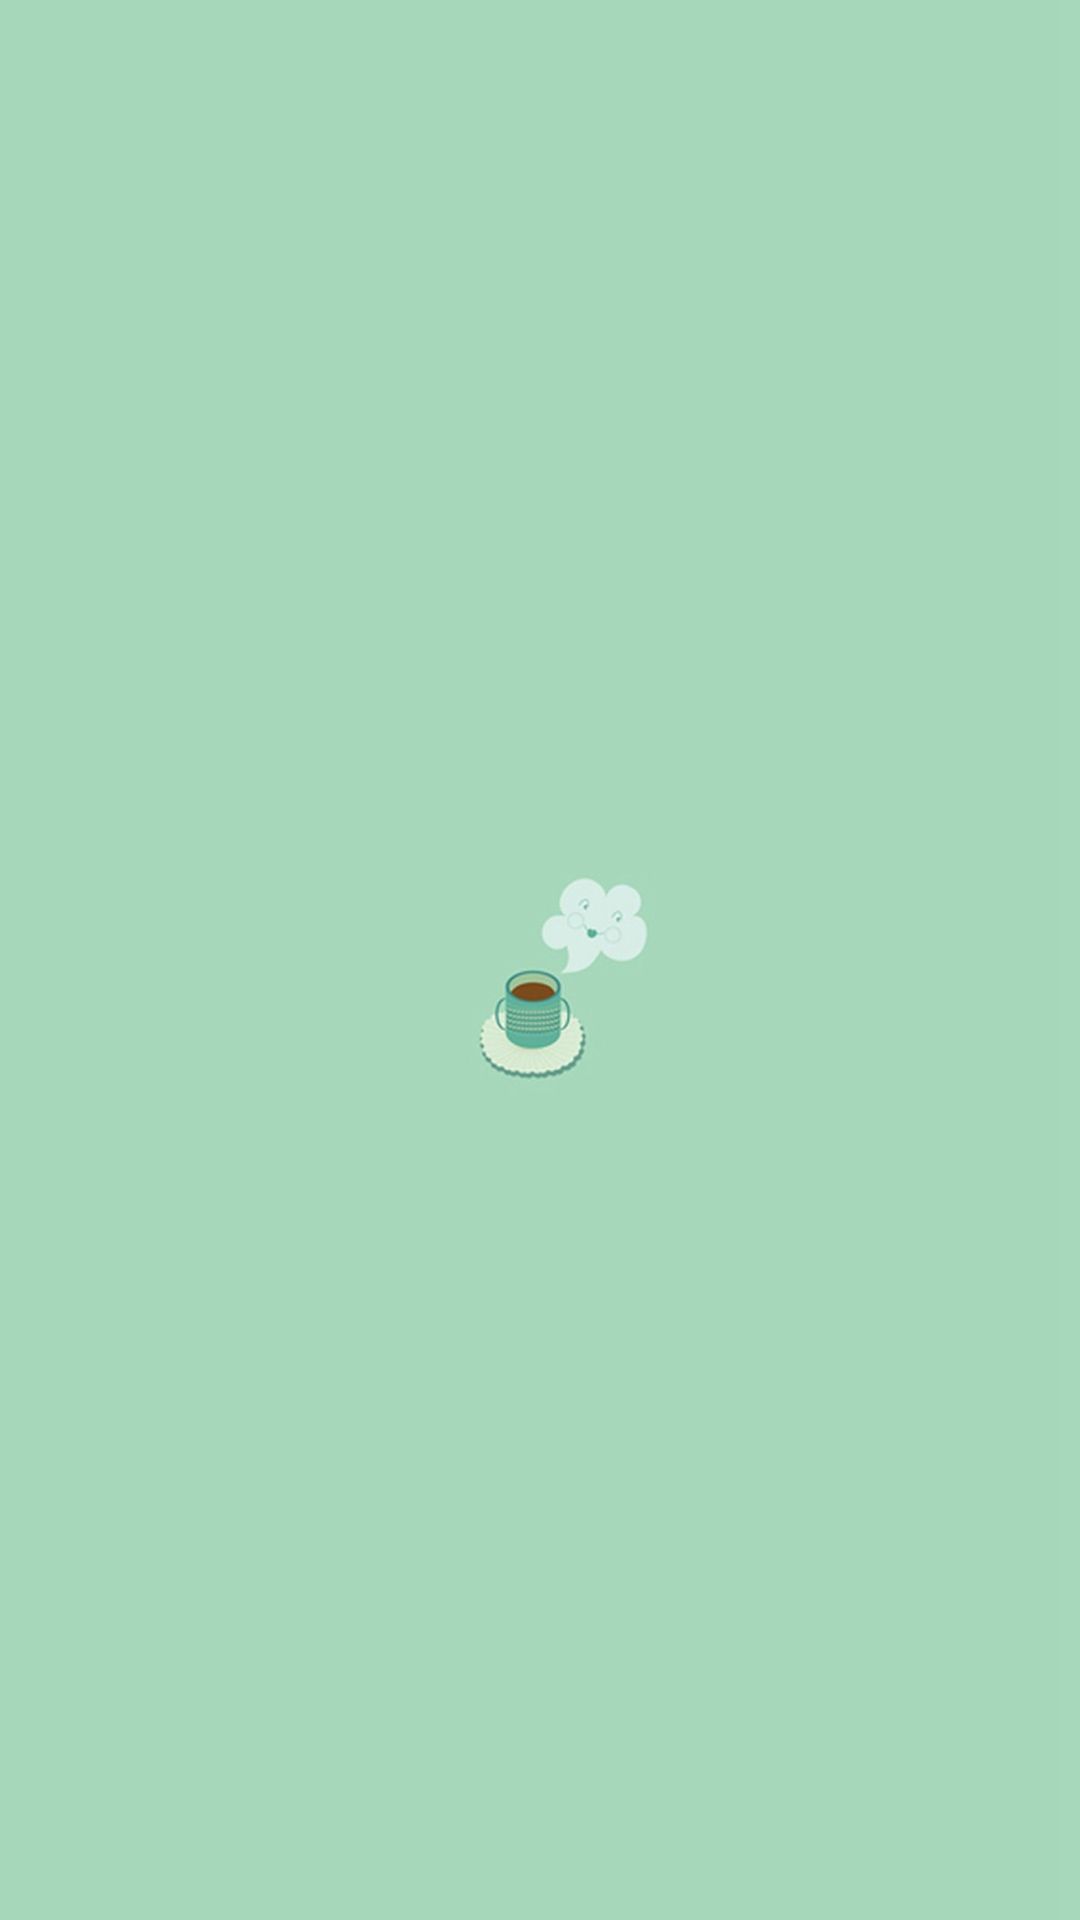 Simple Coffee Mug Flat Illustration iPhone 6 Wallpaper Download. iPhone Wallpaper, iPad wallpa. Coffee wallpaper iphone, Minimalist wallpaper, Simple wallpaper